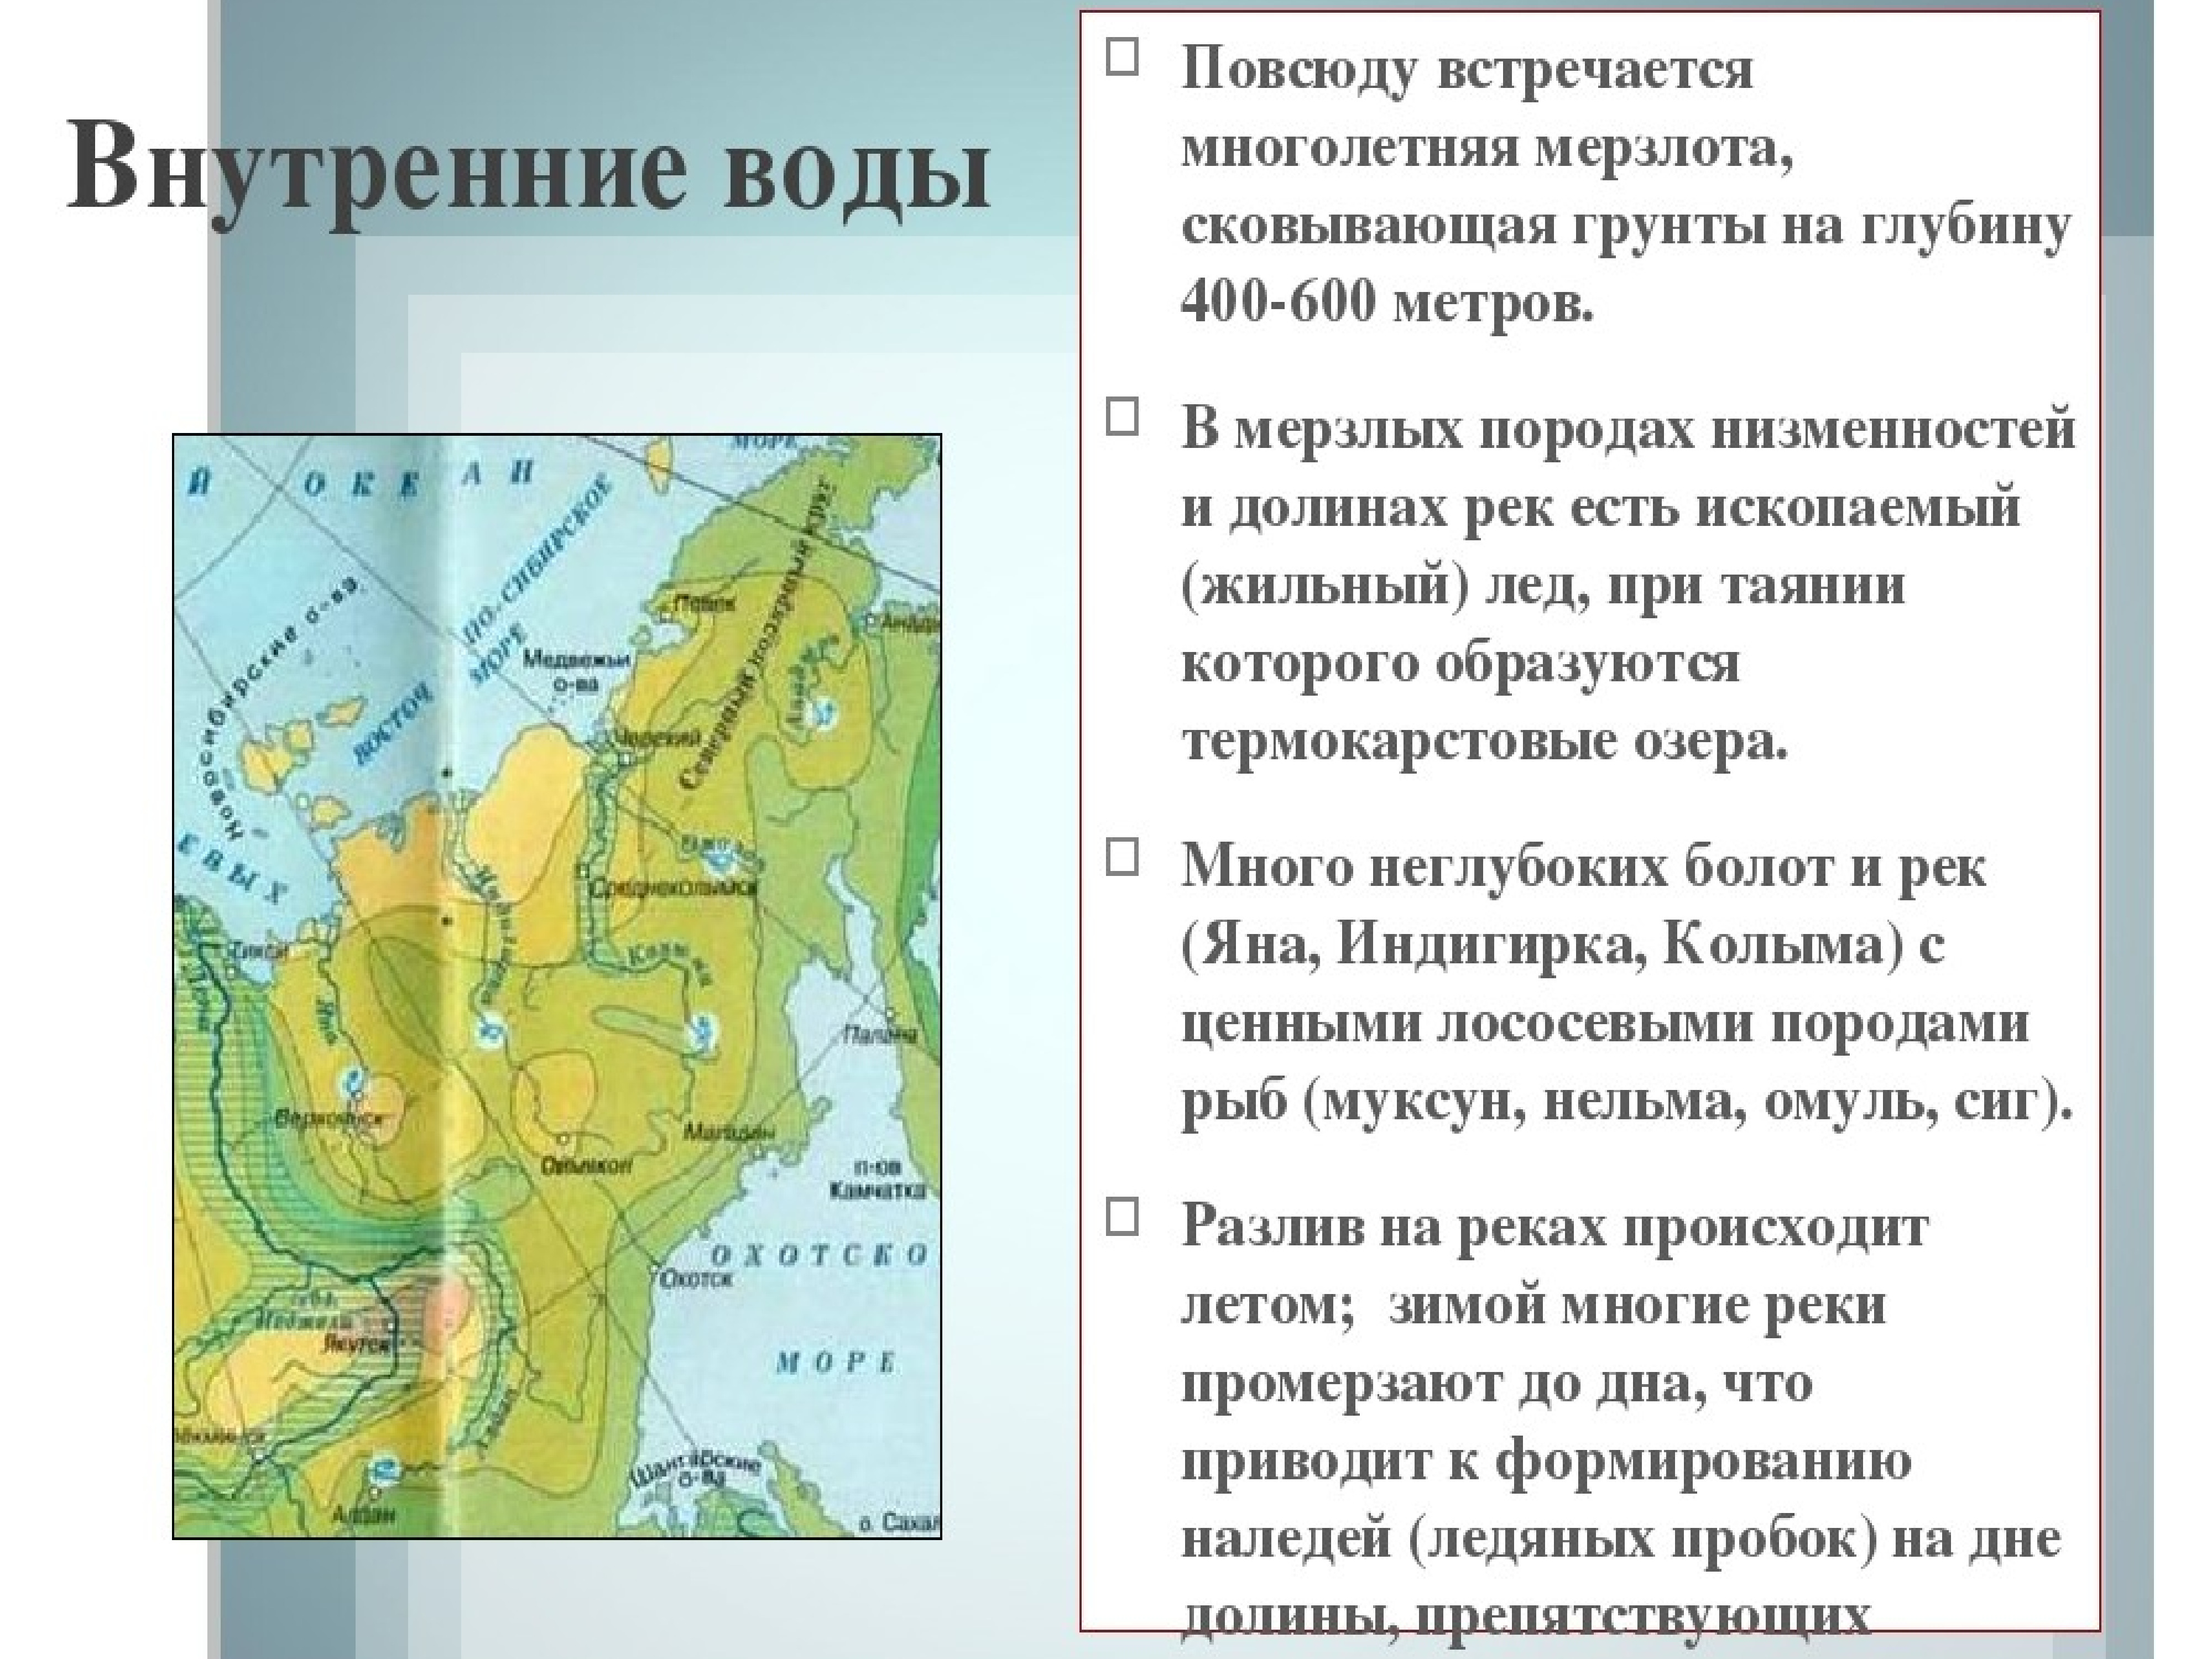 Характеристика внутренних вод Восточной Сибири